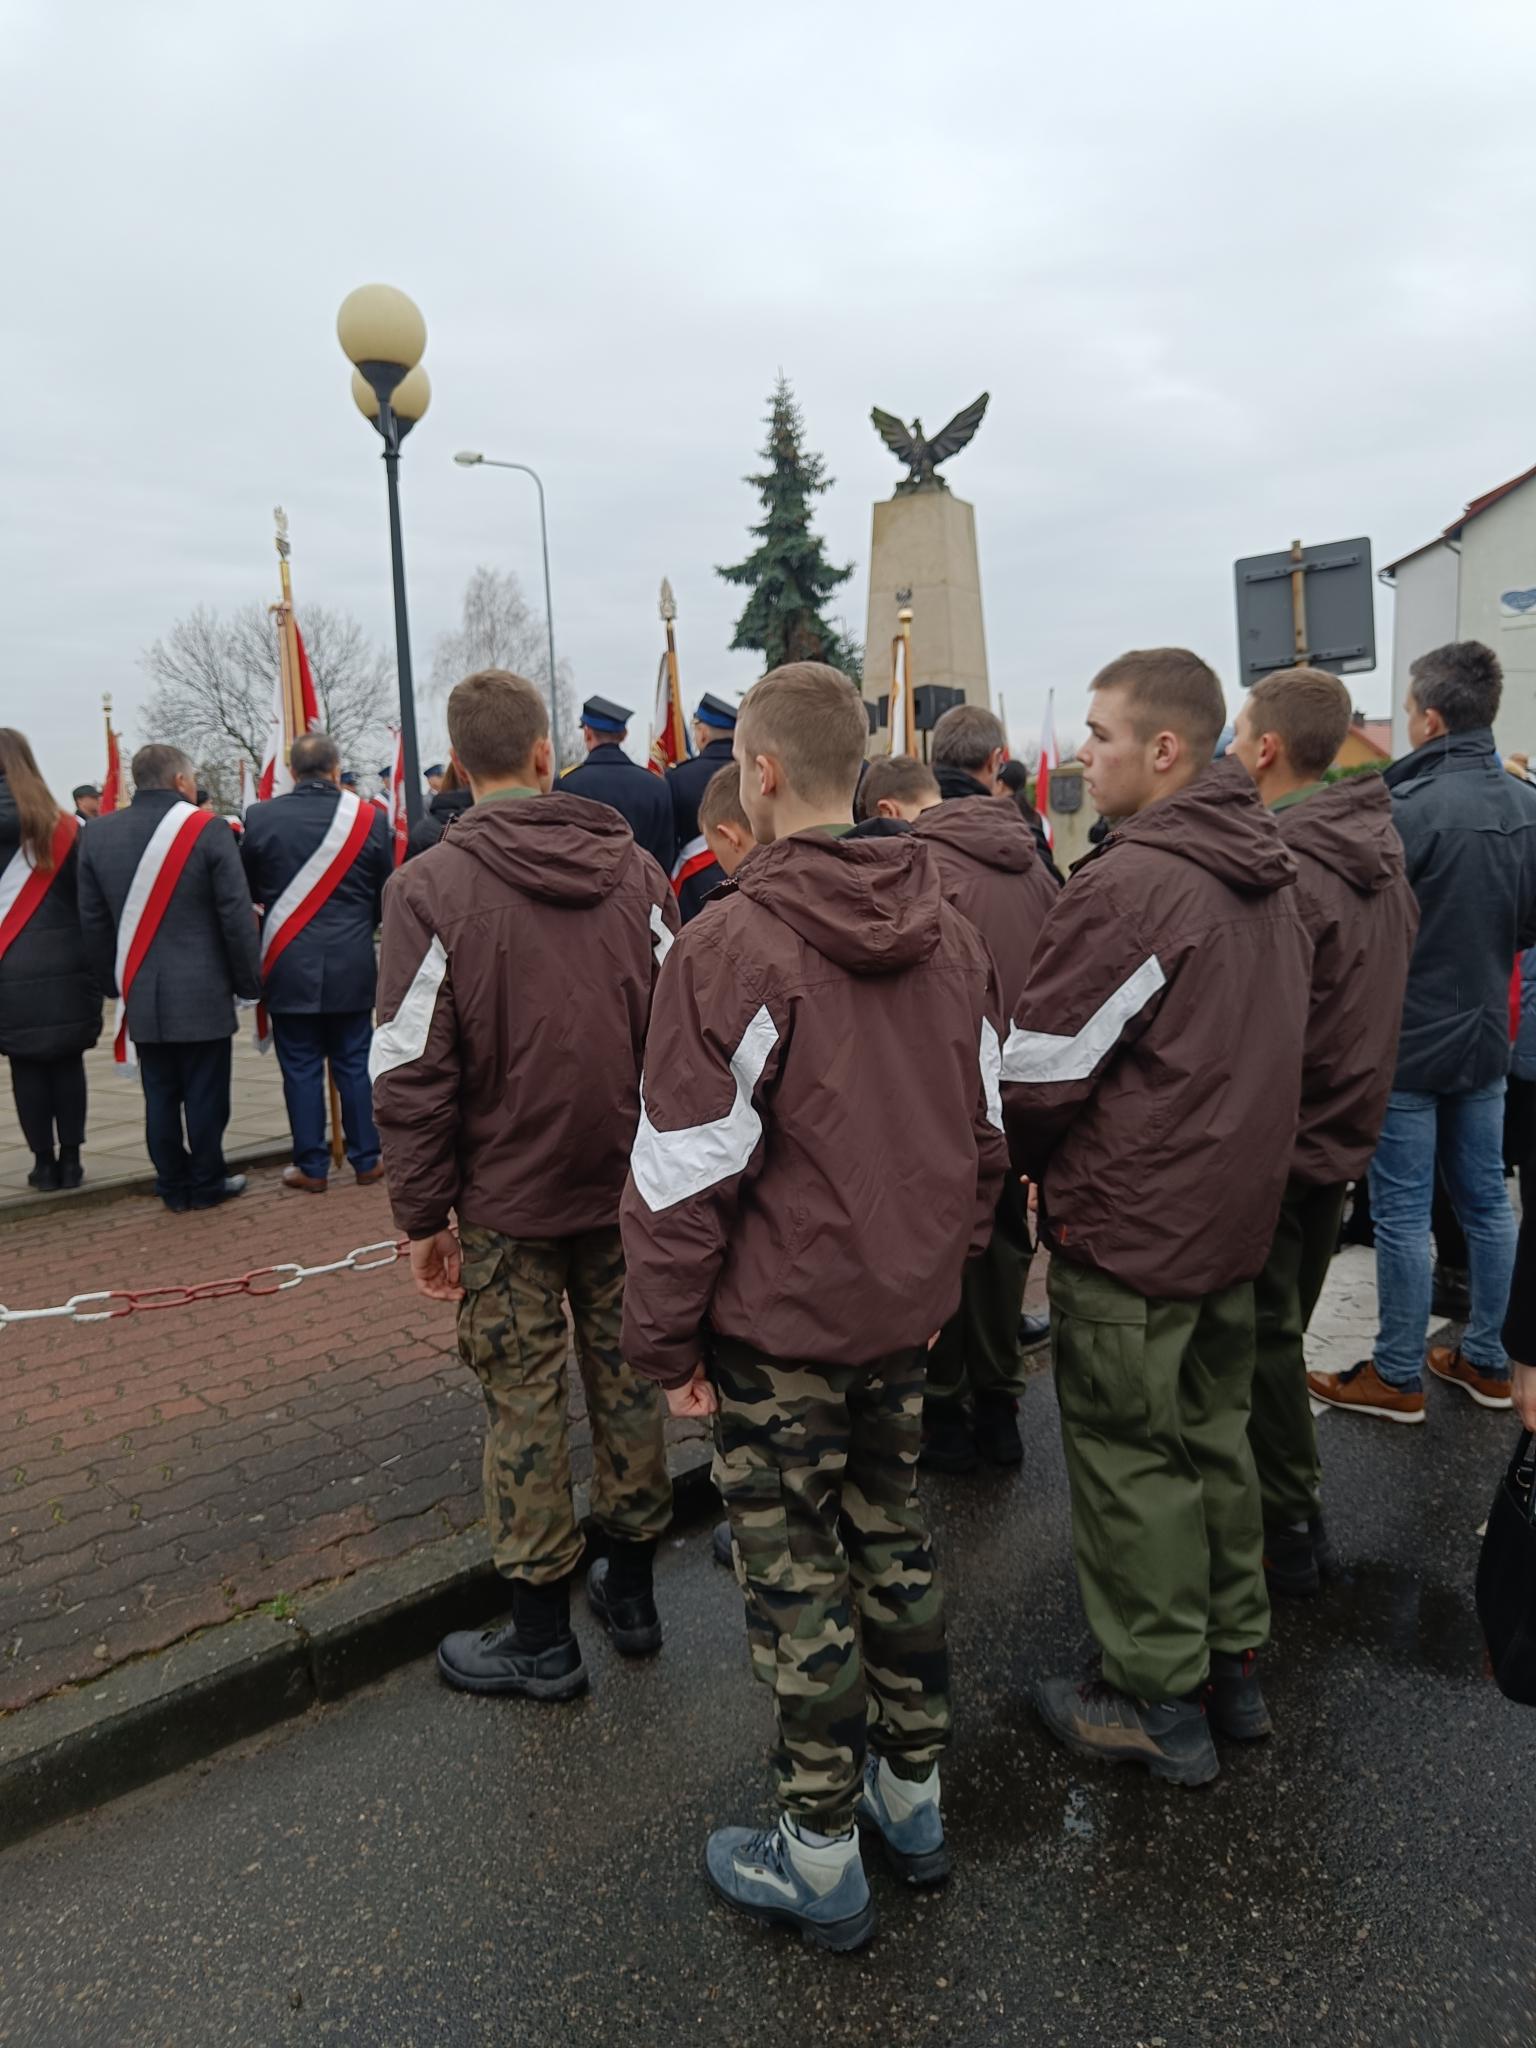 Narodowe Święto Niepodległości | Wychowankowie MOW w brązowych kurtkach i wojskowych spodniach stoją tyłem między innymi ludźmi pod Pomnikiem Niepodległości..jpg